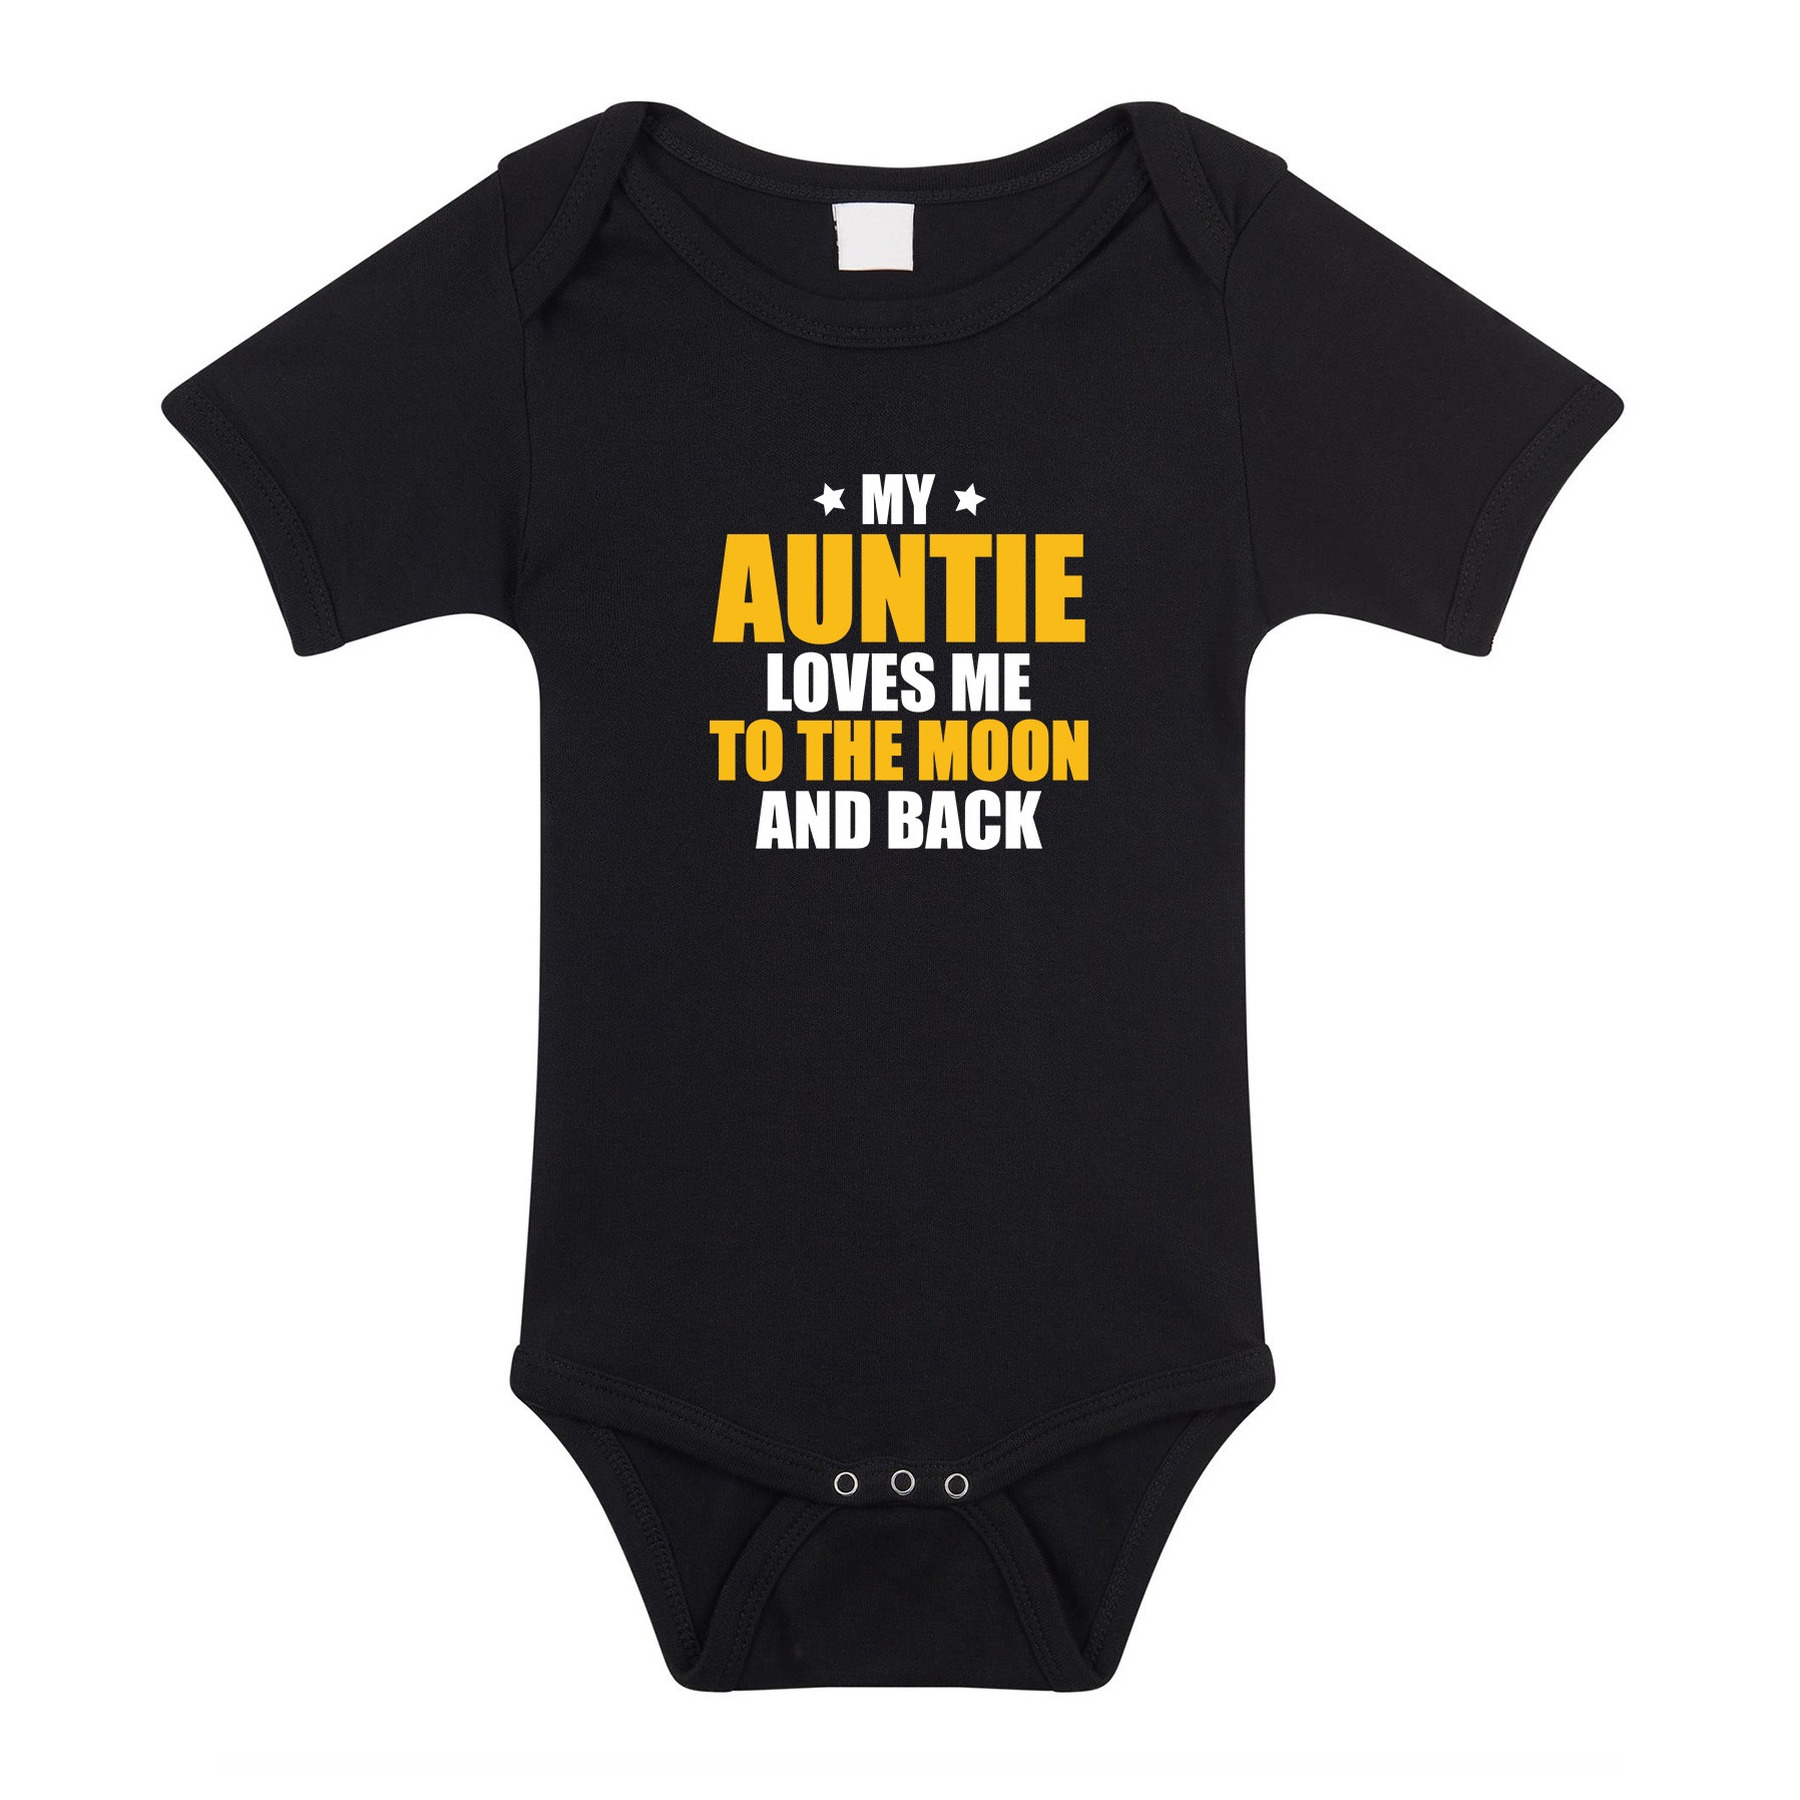 Auntie loves me to the moon tante cadeau baby rompertje zwart jongen-meisje